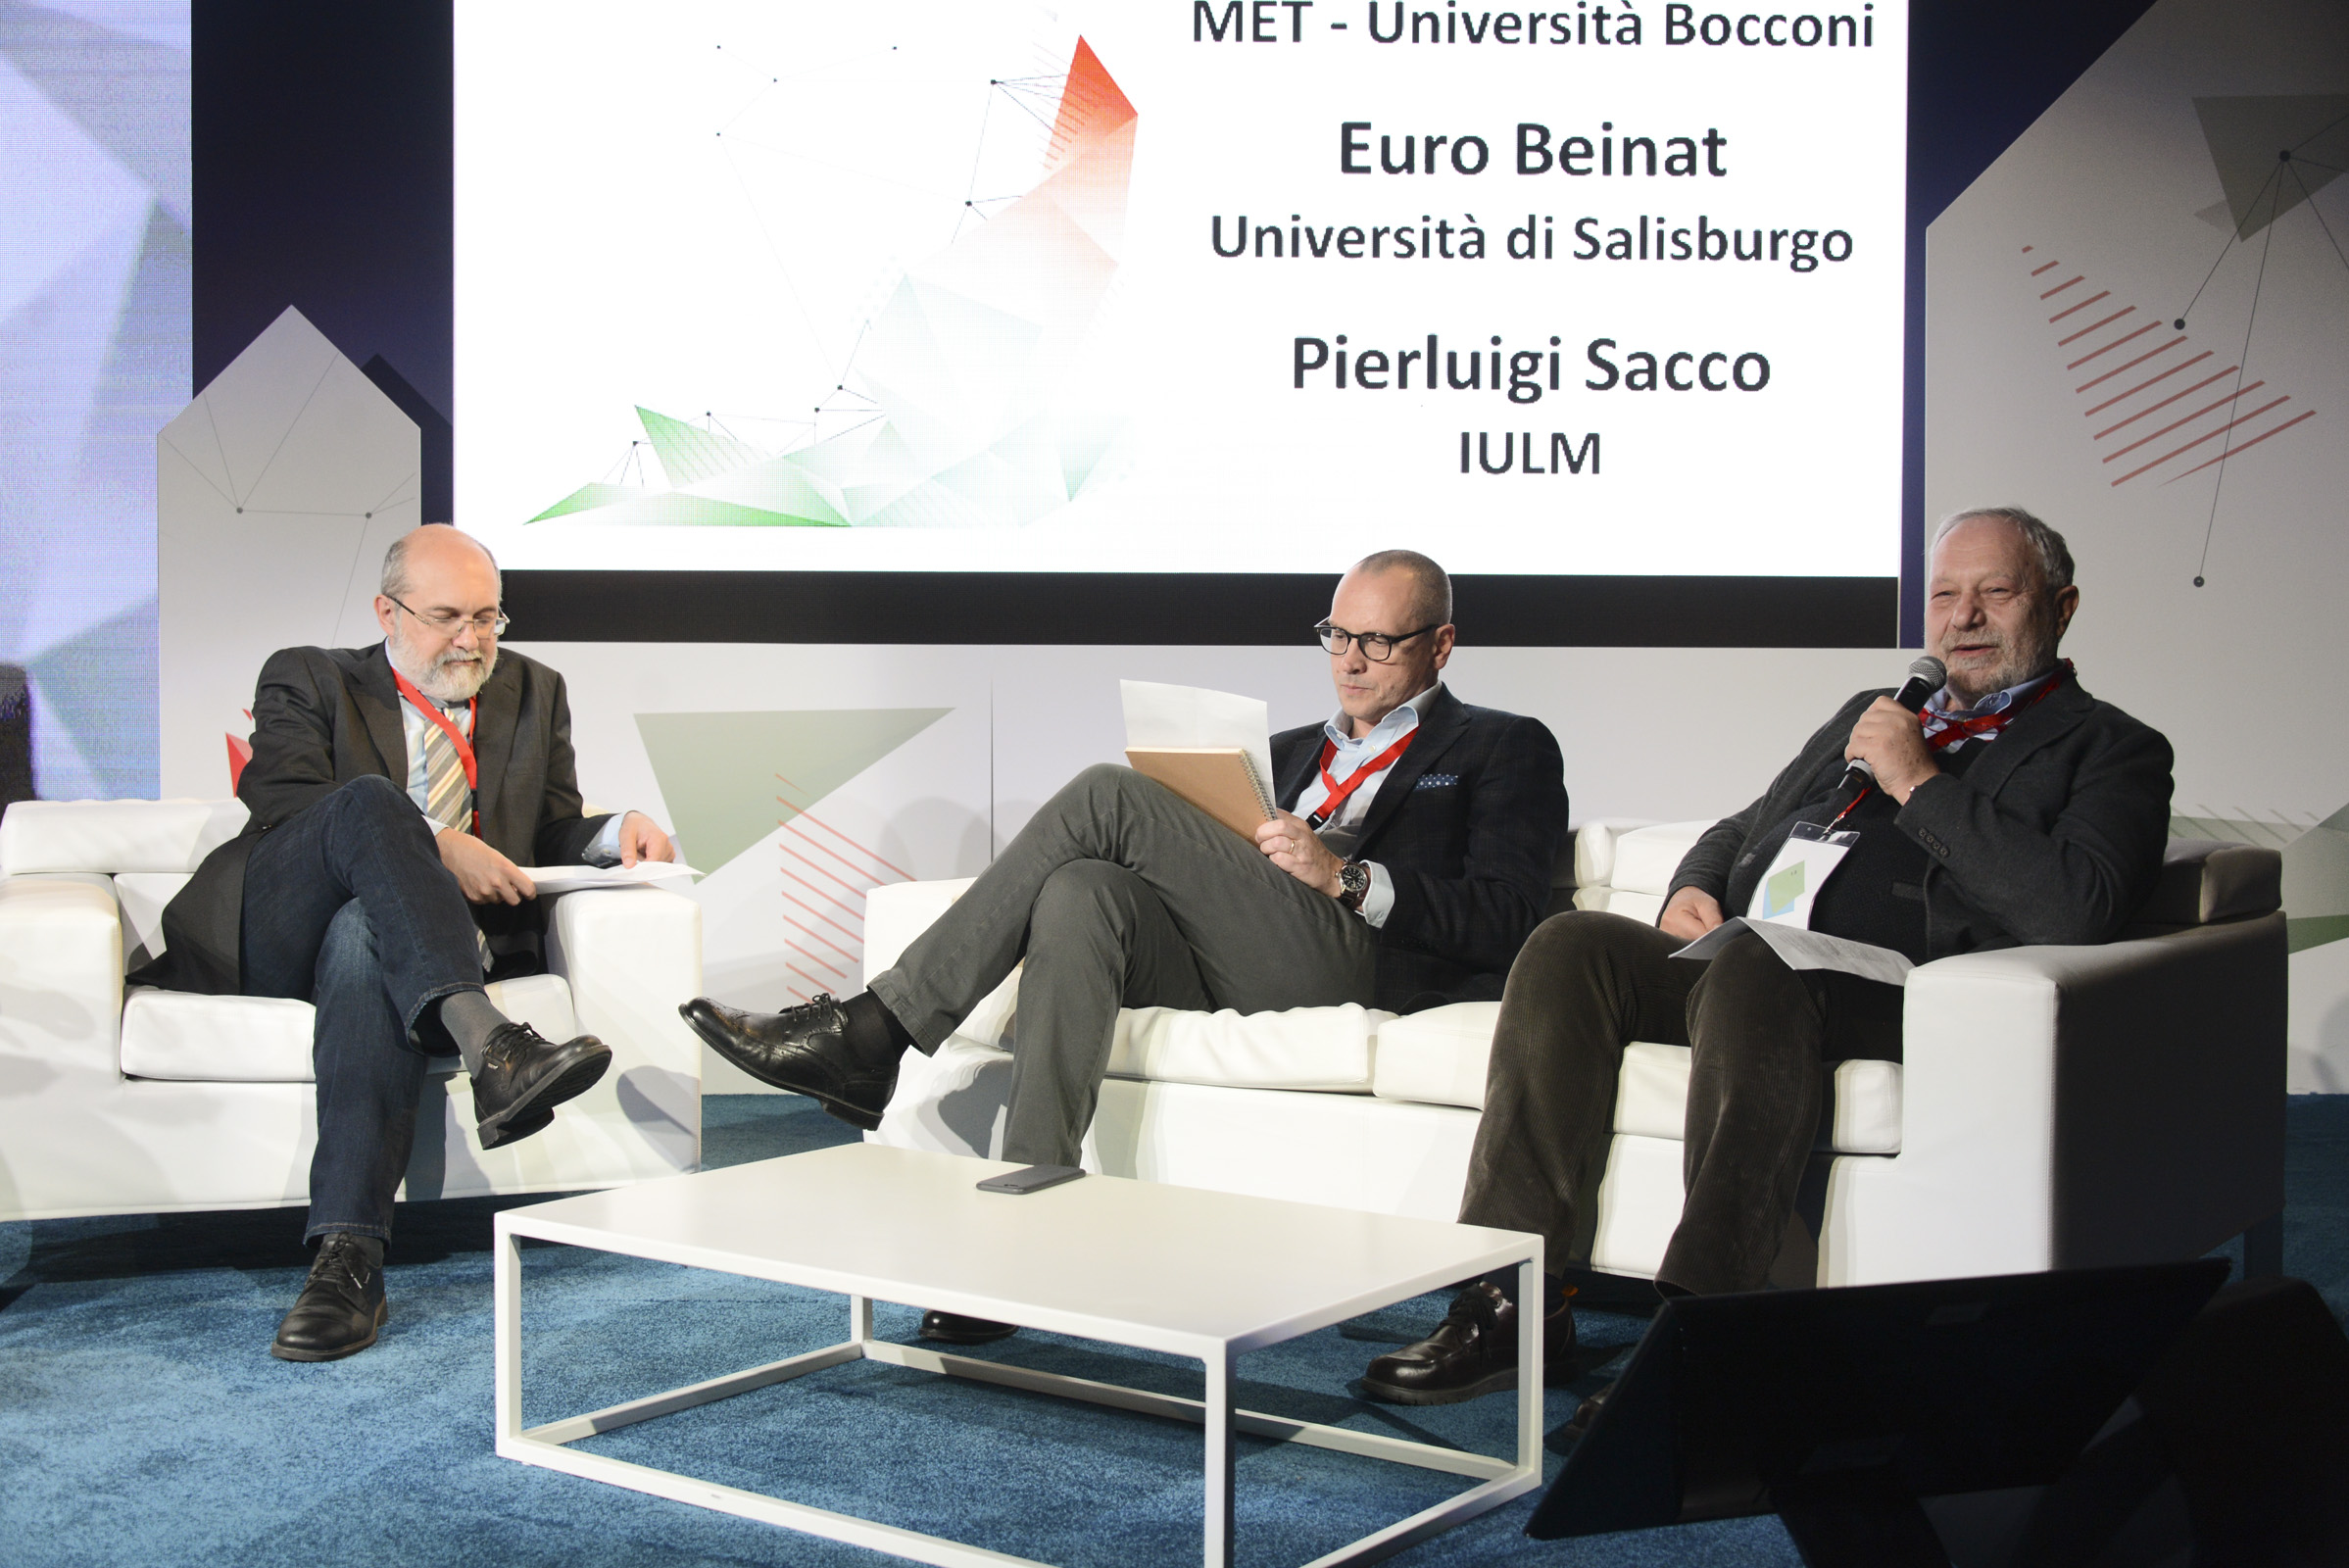 Pierluigi Sacco, Euro Beinat e Rodolfo Baggio hanno guidato la discussione sui tre temi chiave di Ecosistemi Digitali.